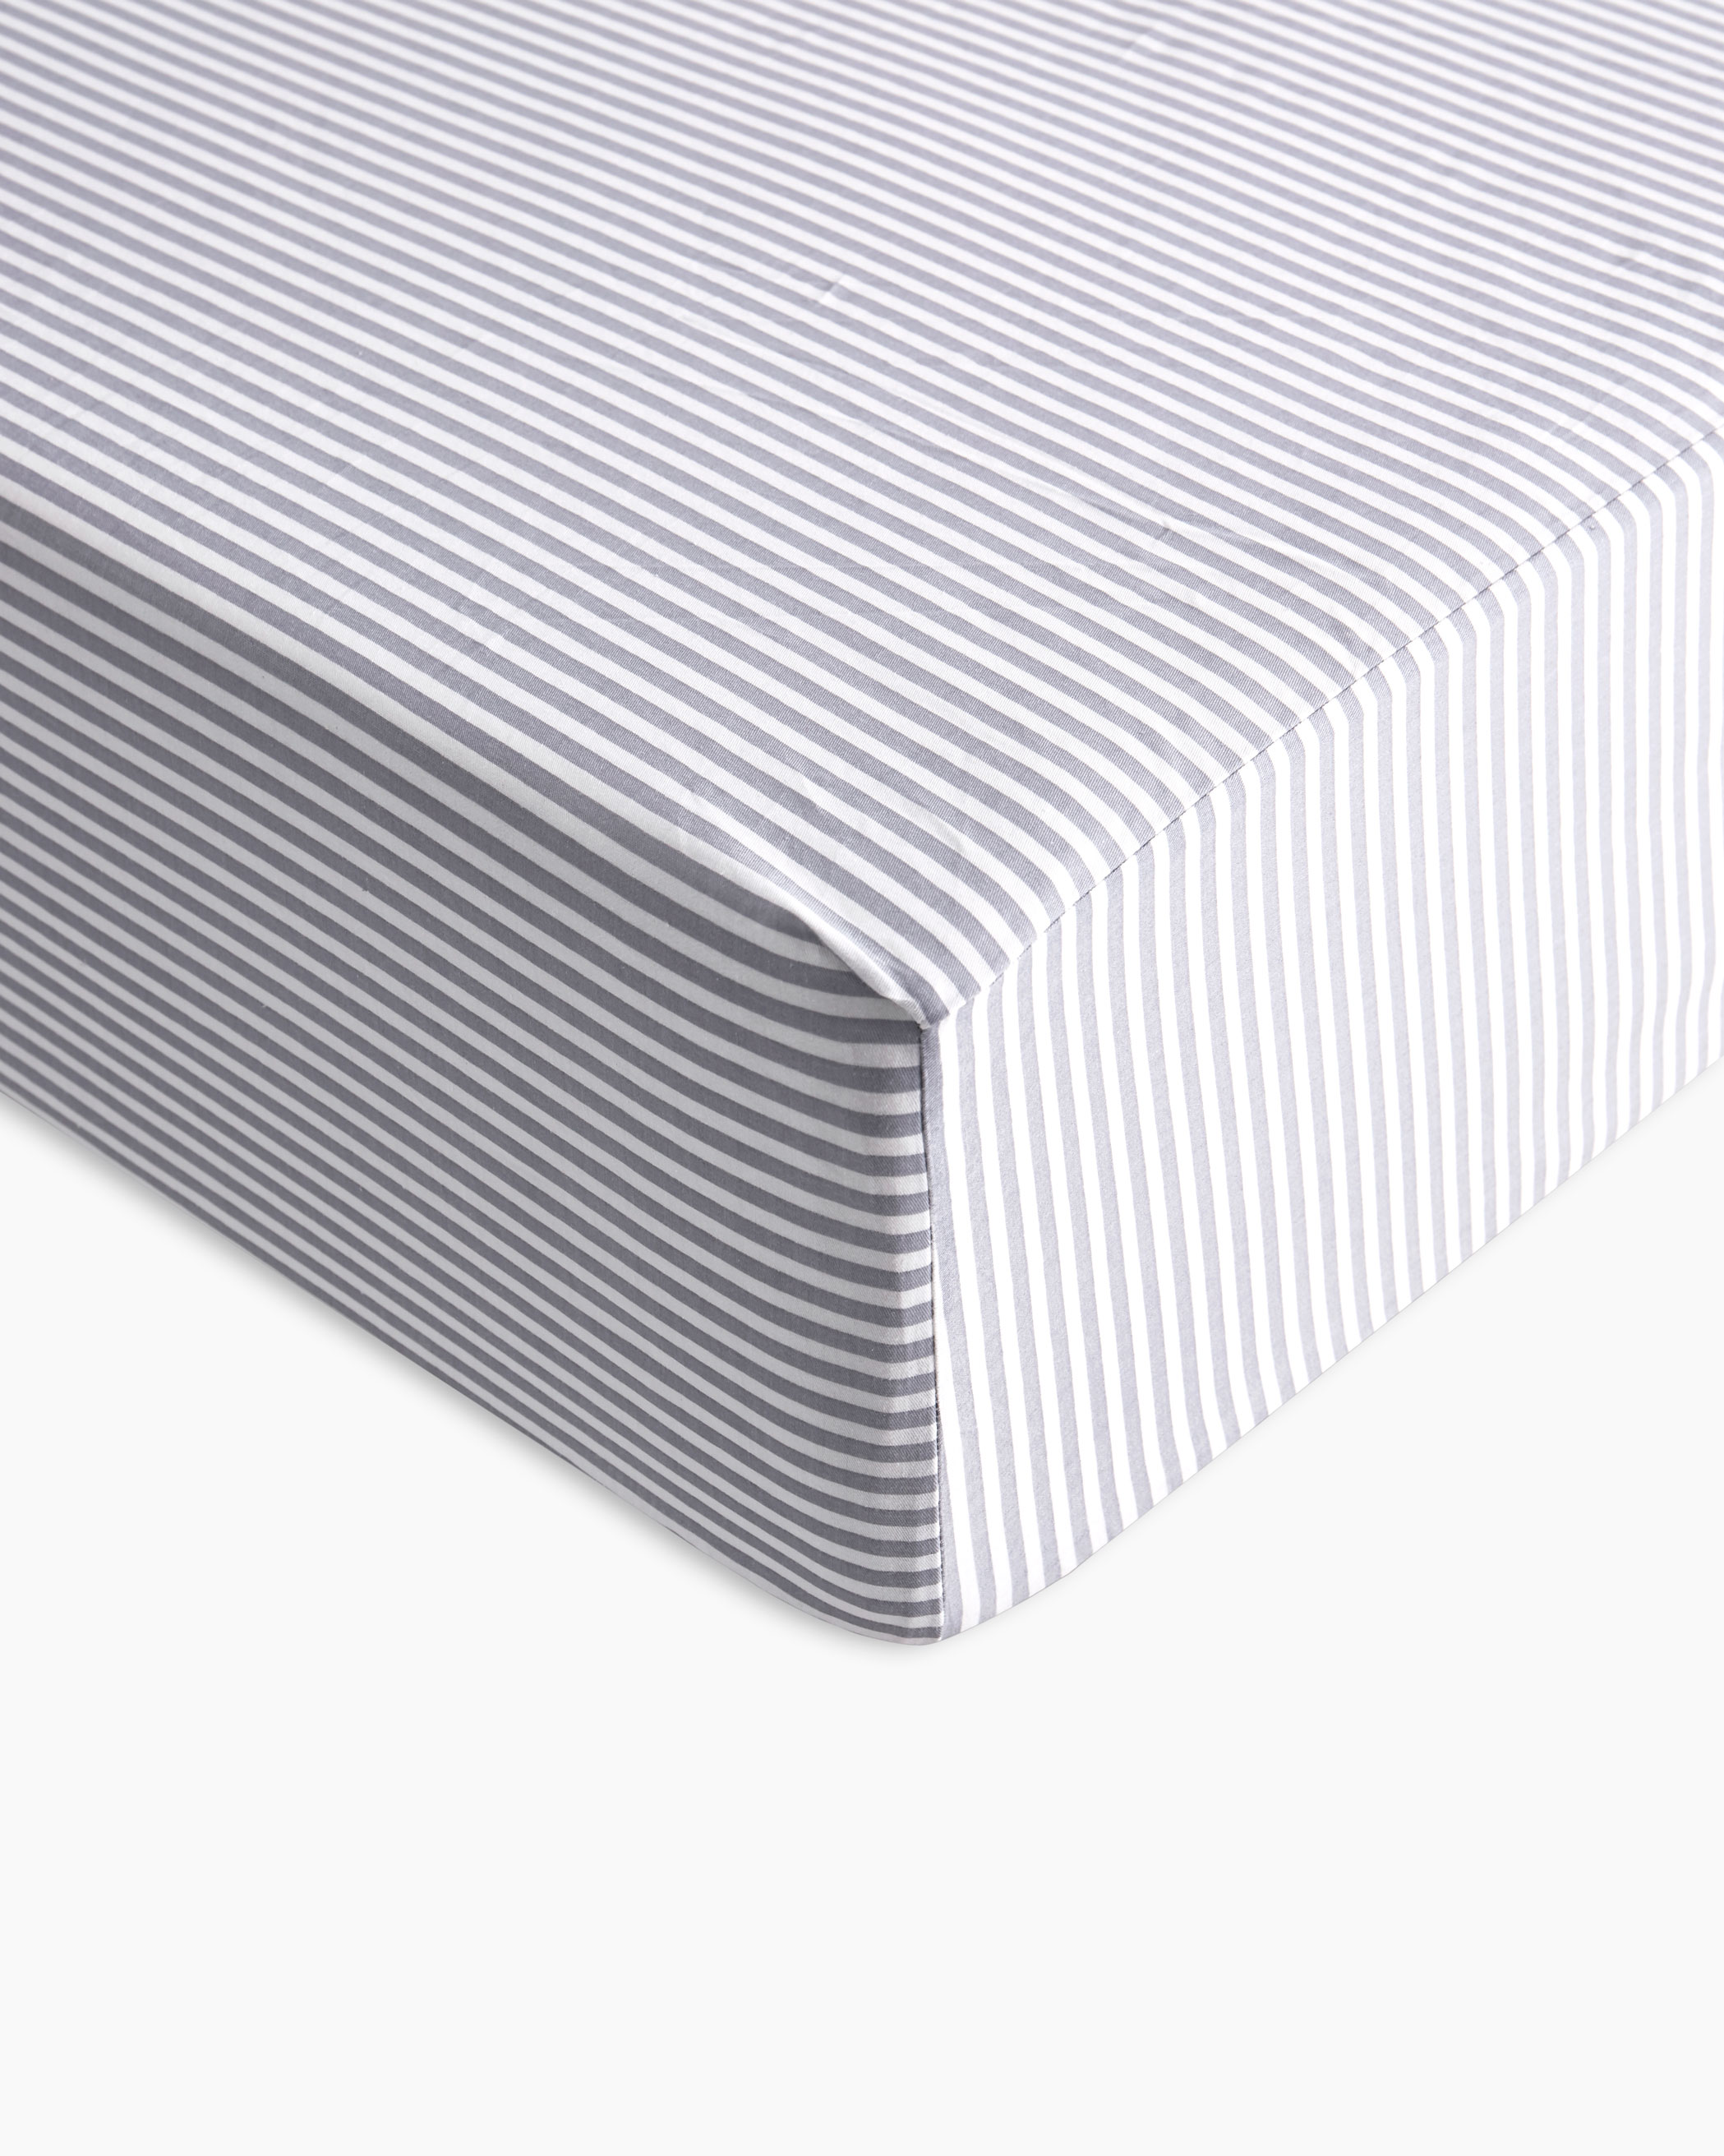 Gray Striped Cotton Sheet Set